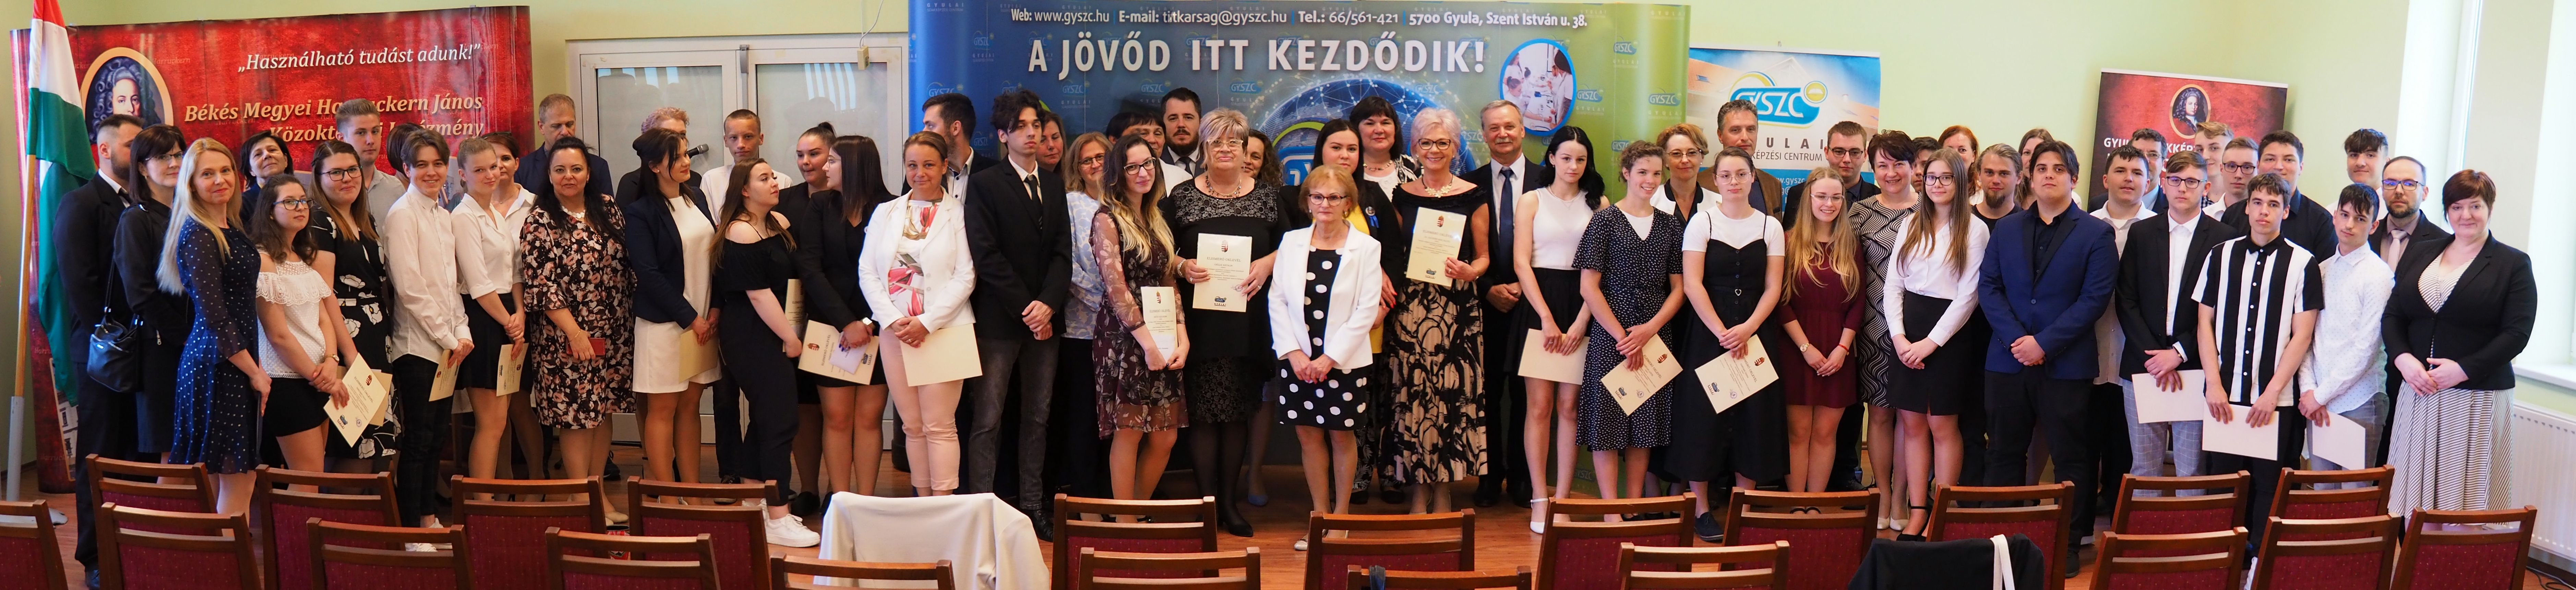 Kiemelkedő versenyeredmények elismerése a Gyulai Szakképzési Centrumban című hír borítóképe